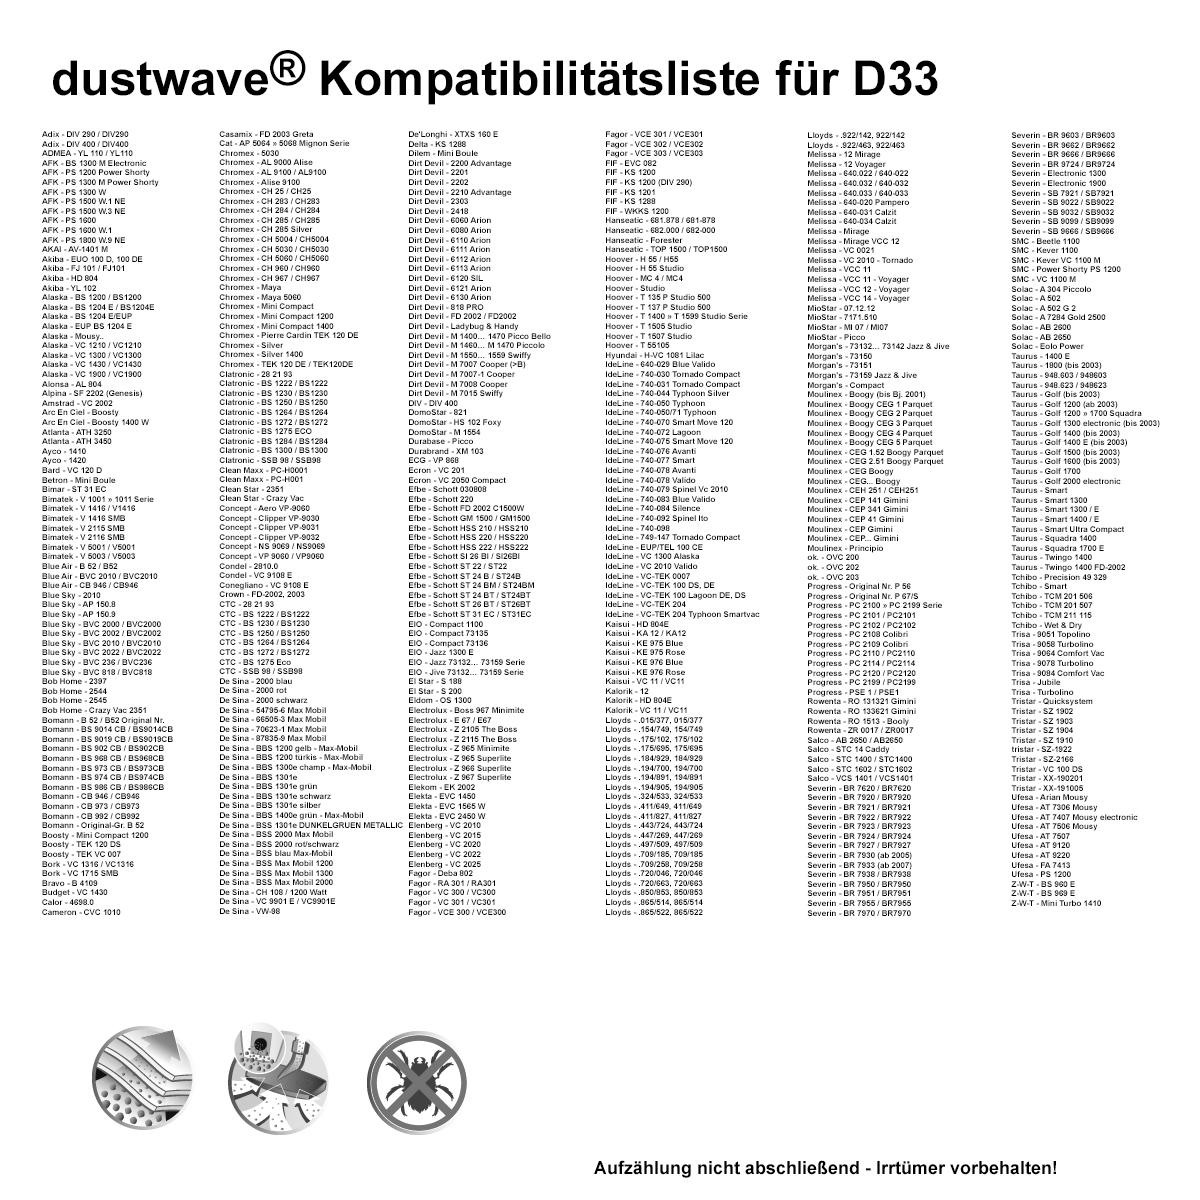 Dustwave® 1 Staubsaugerbeutel für Bomann BS 9019 CB / BS9019CB - hocheffizient mit Hygieneverschluss - Made in Germany